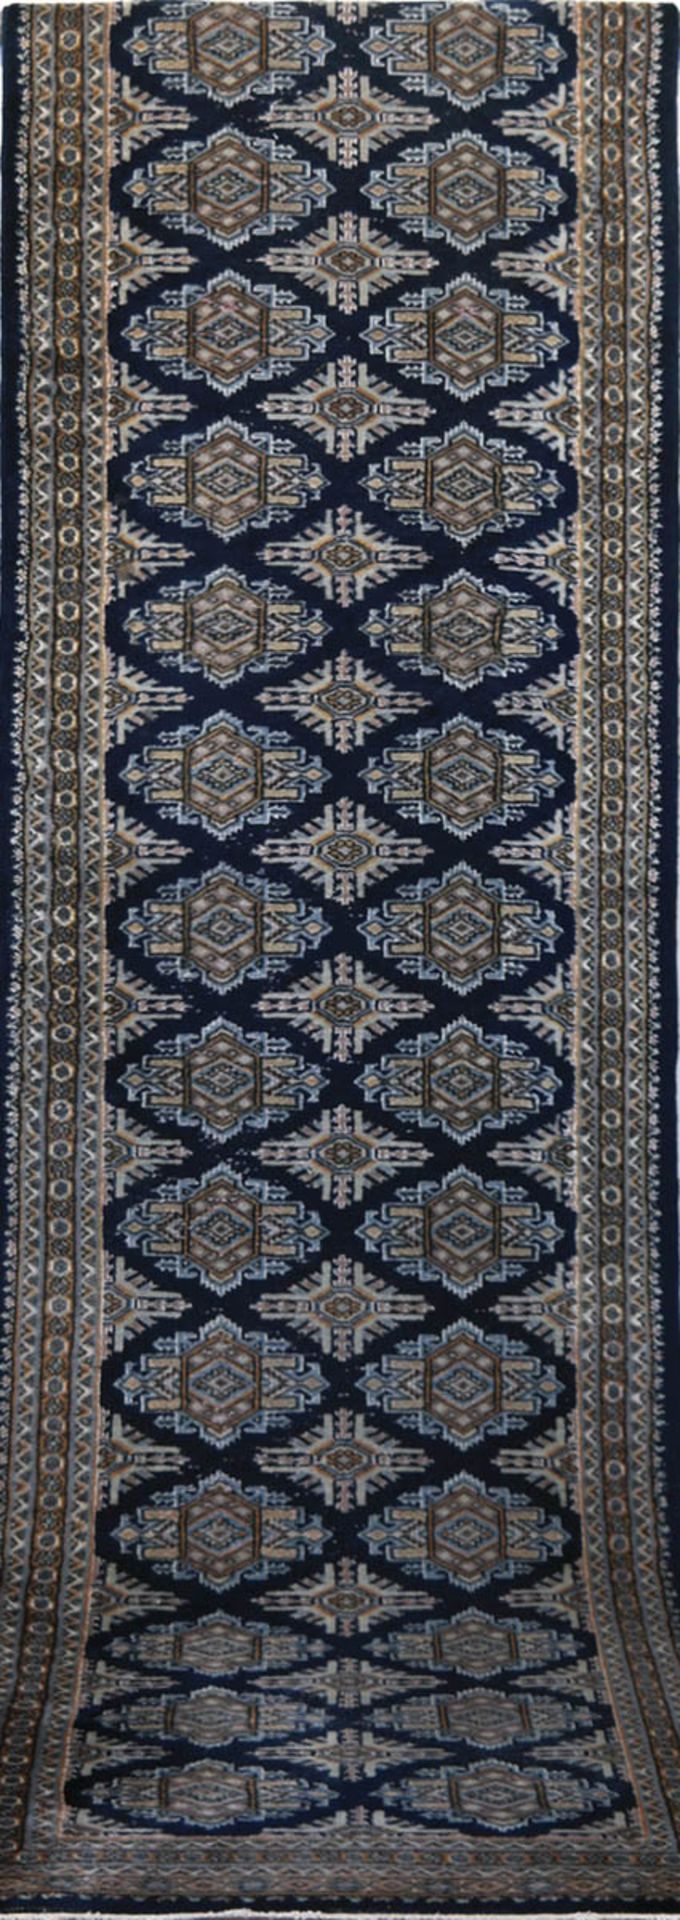 Buchara, Pakistan, blaugrundig, mit durchgehendem Muster, Fransen geschnitten, Reinigung empfohlen,